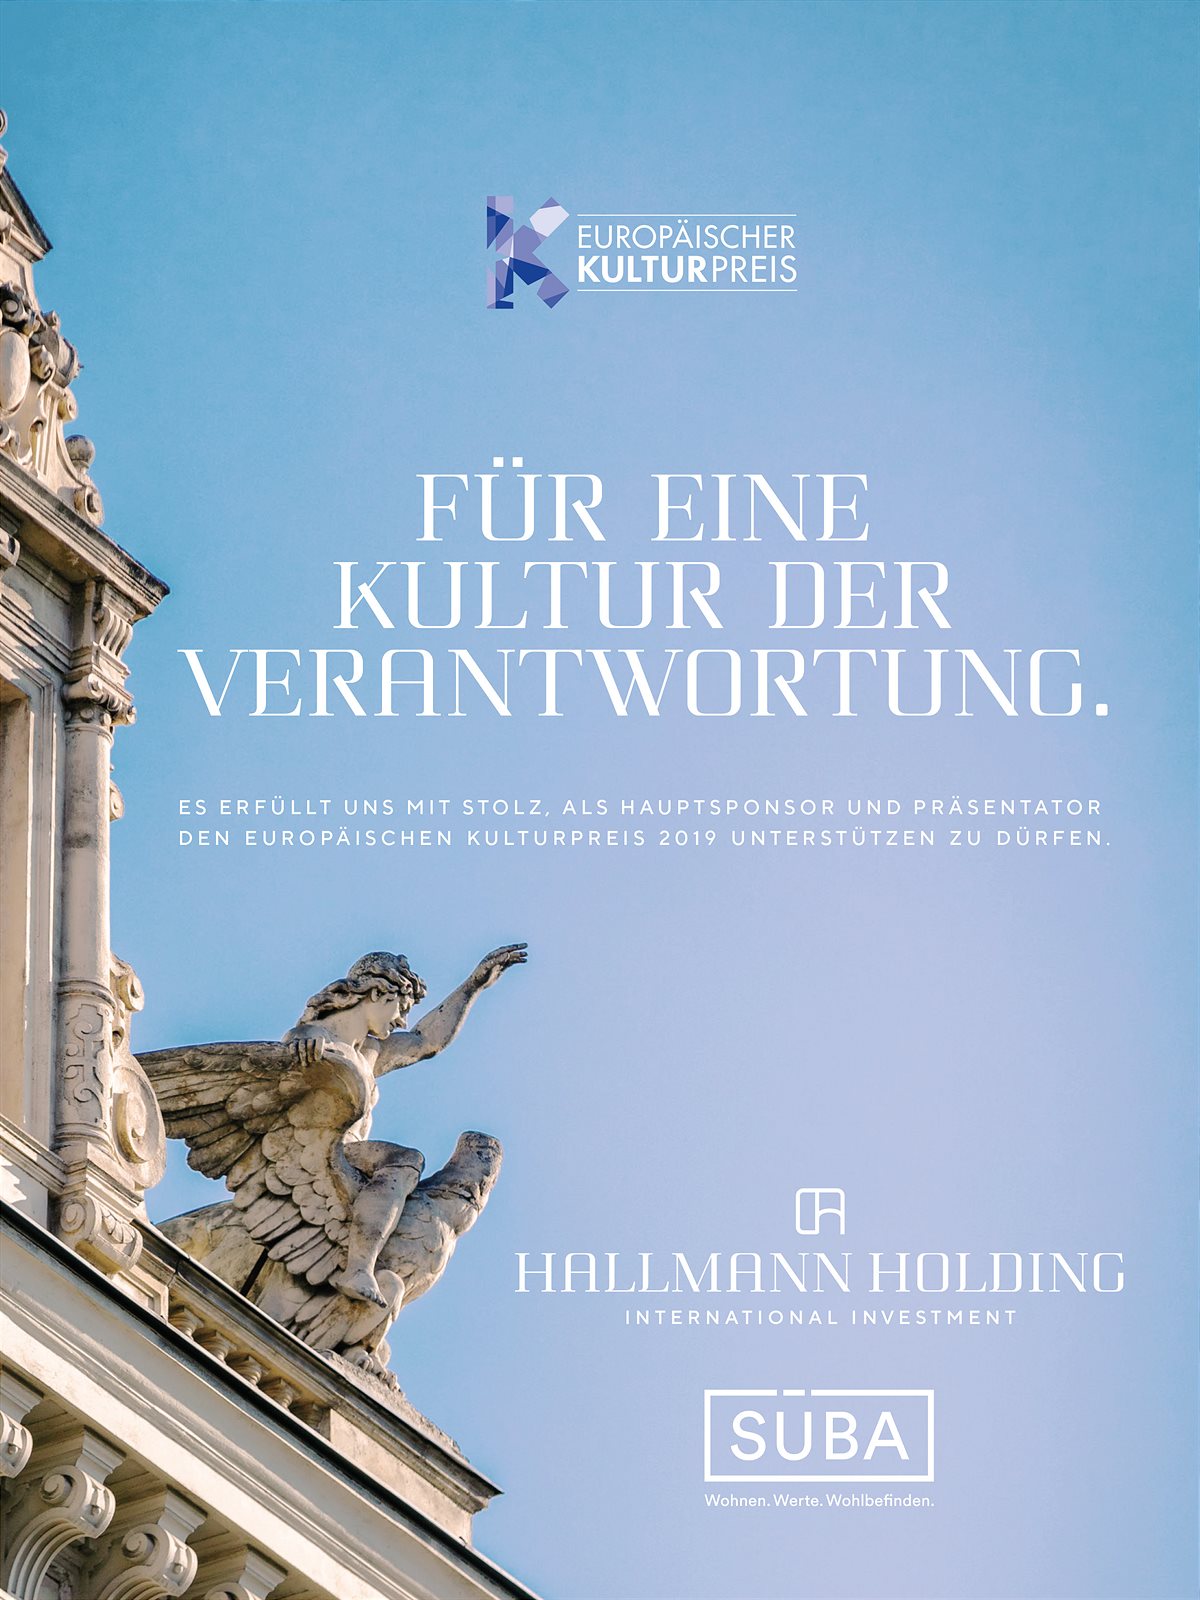 Hallmann Holding präsentiert den Europäischen Kulturpreis 2019